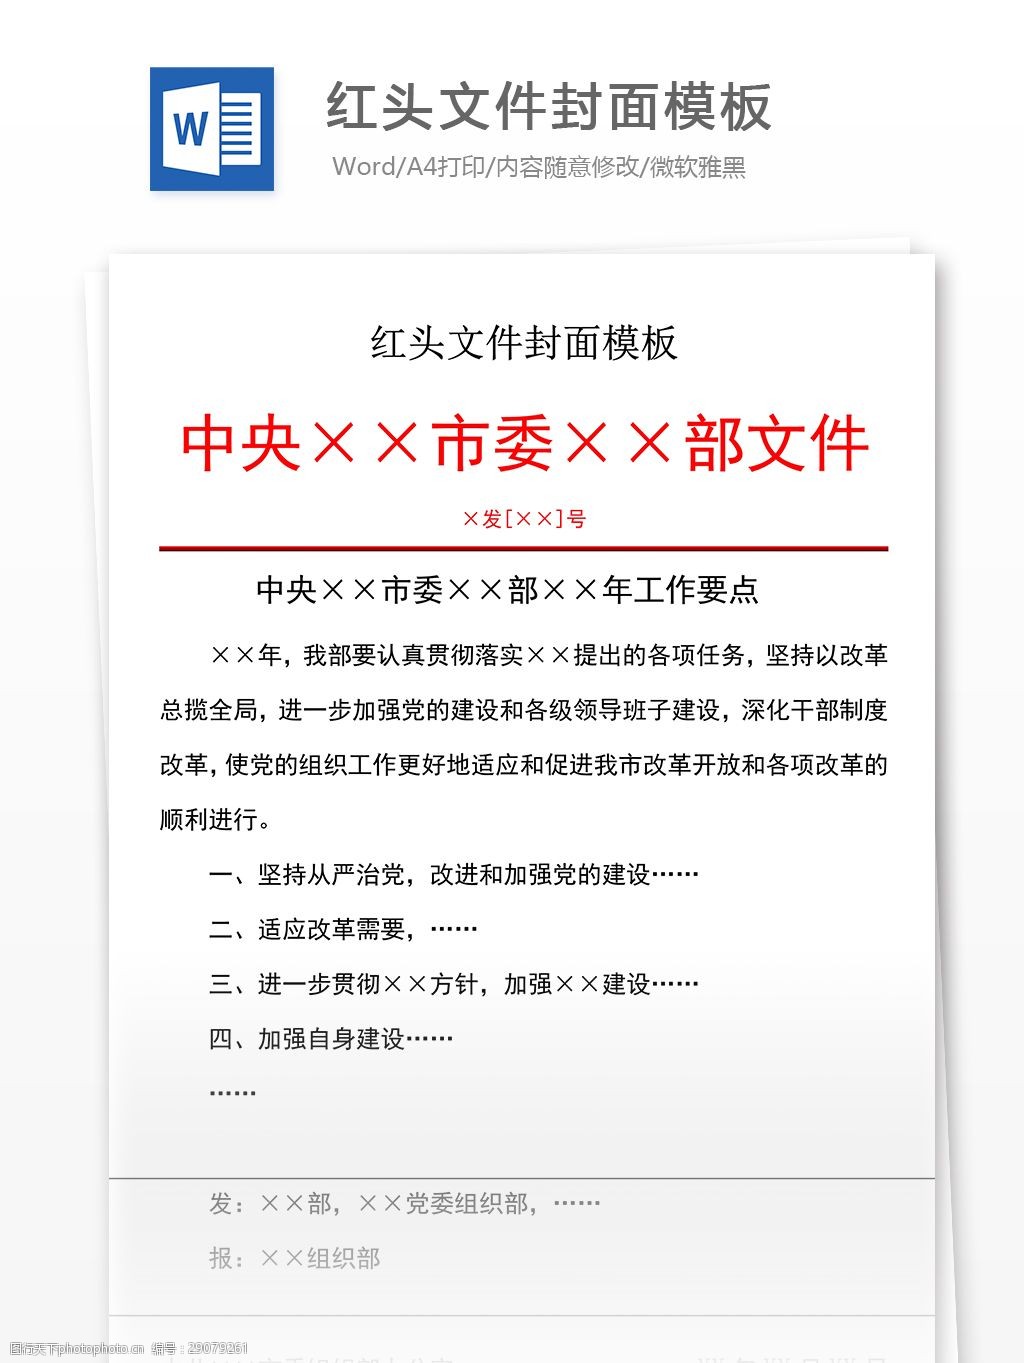 如何查阅《北京市人民政府公报》获取更多政策信息？(图1)